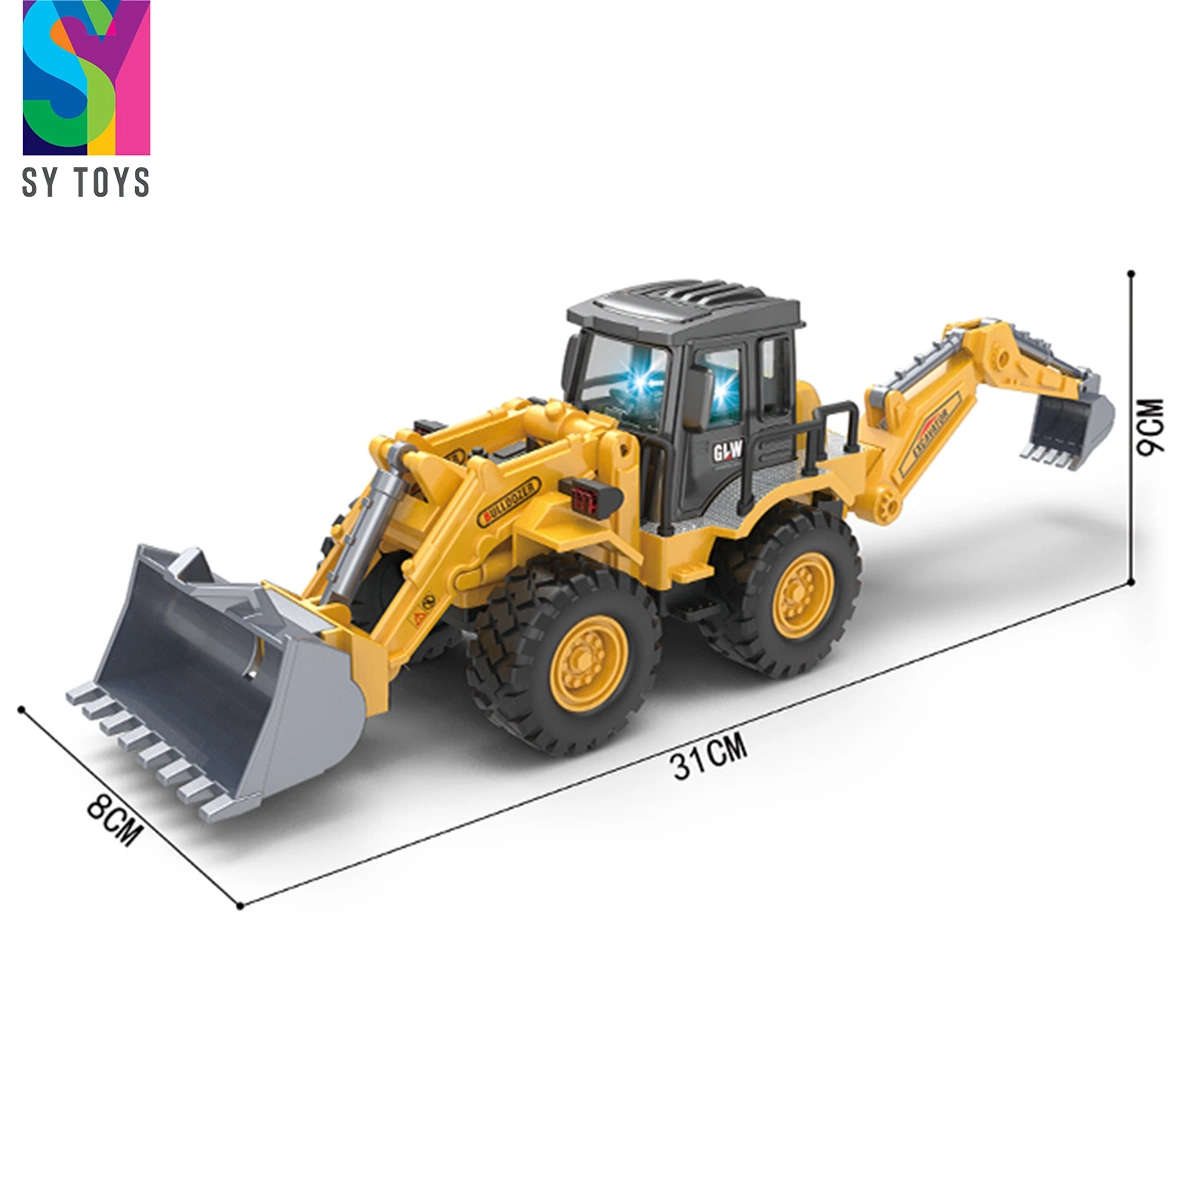 Sy juguetes niños juguetes de vehículo de construcción la construcción de topadoras de niño de la excavadora de juguete coche inercial camiones